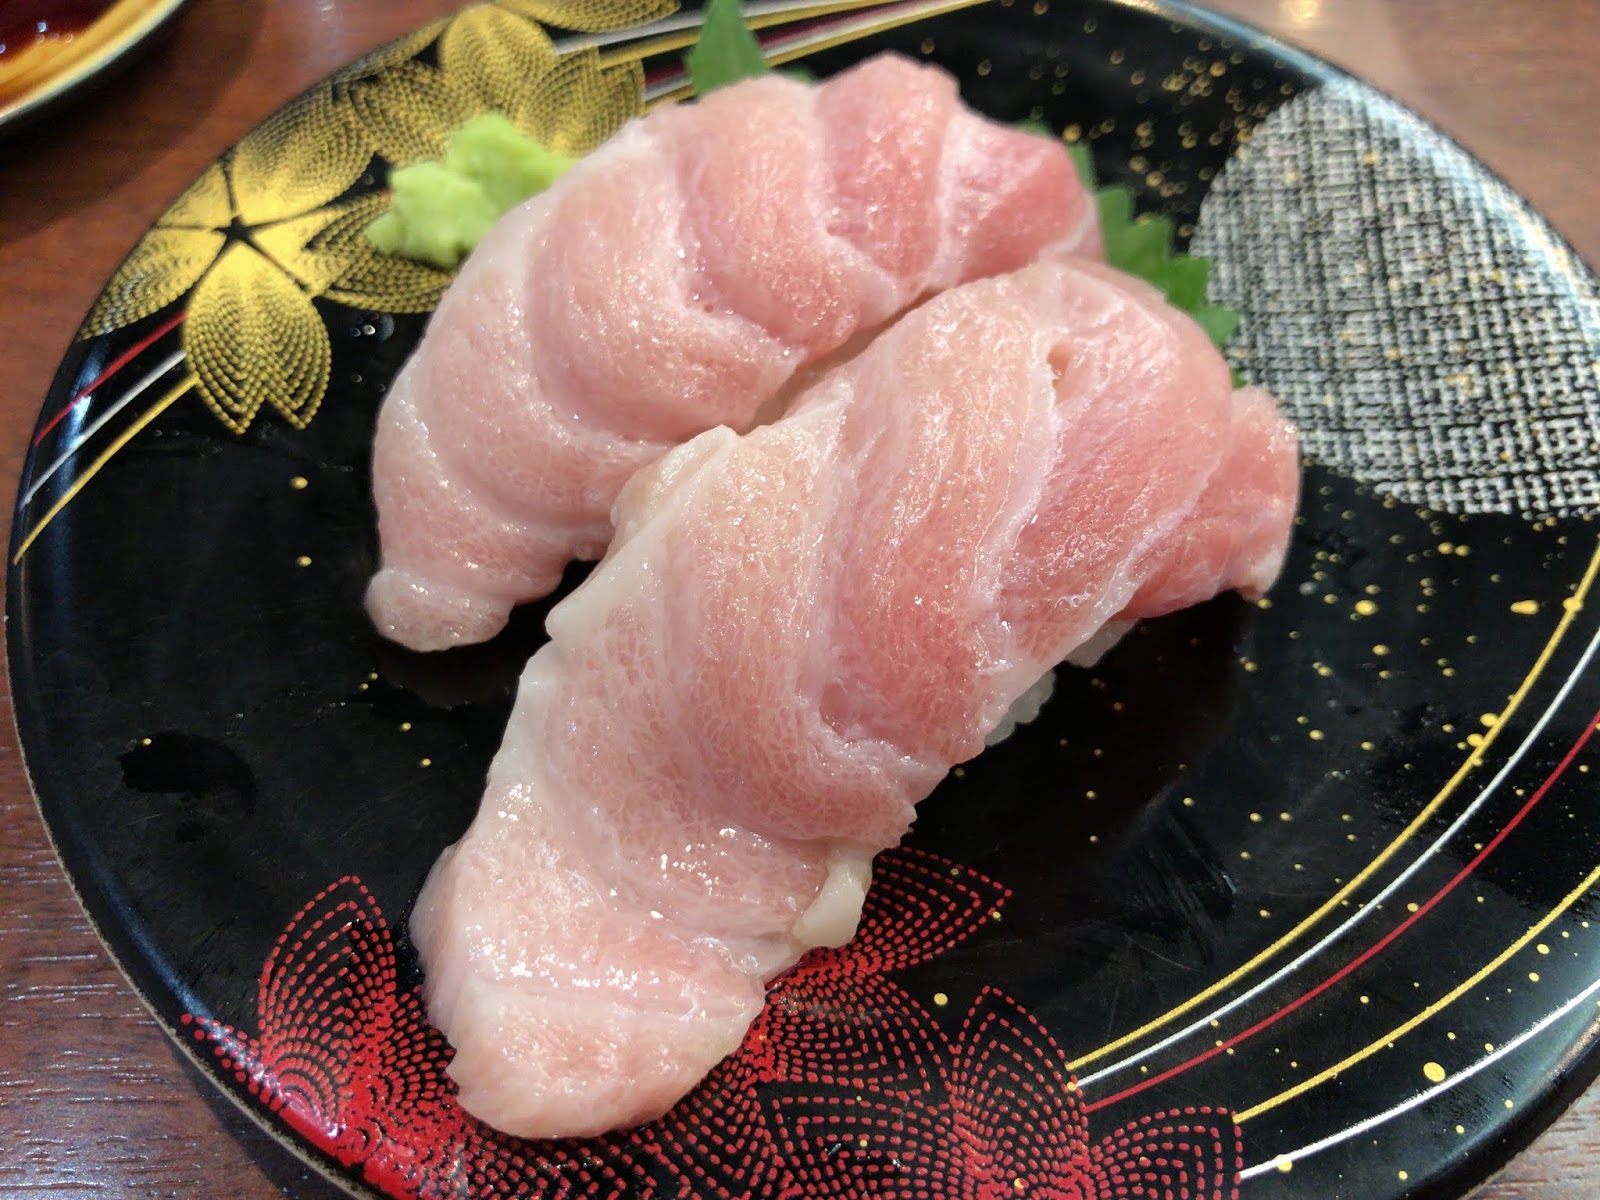 マグロが美味しい回転寿司の すし遊館 はハズレの日も普通以上に旨い イクメンライフハッカー